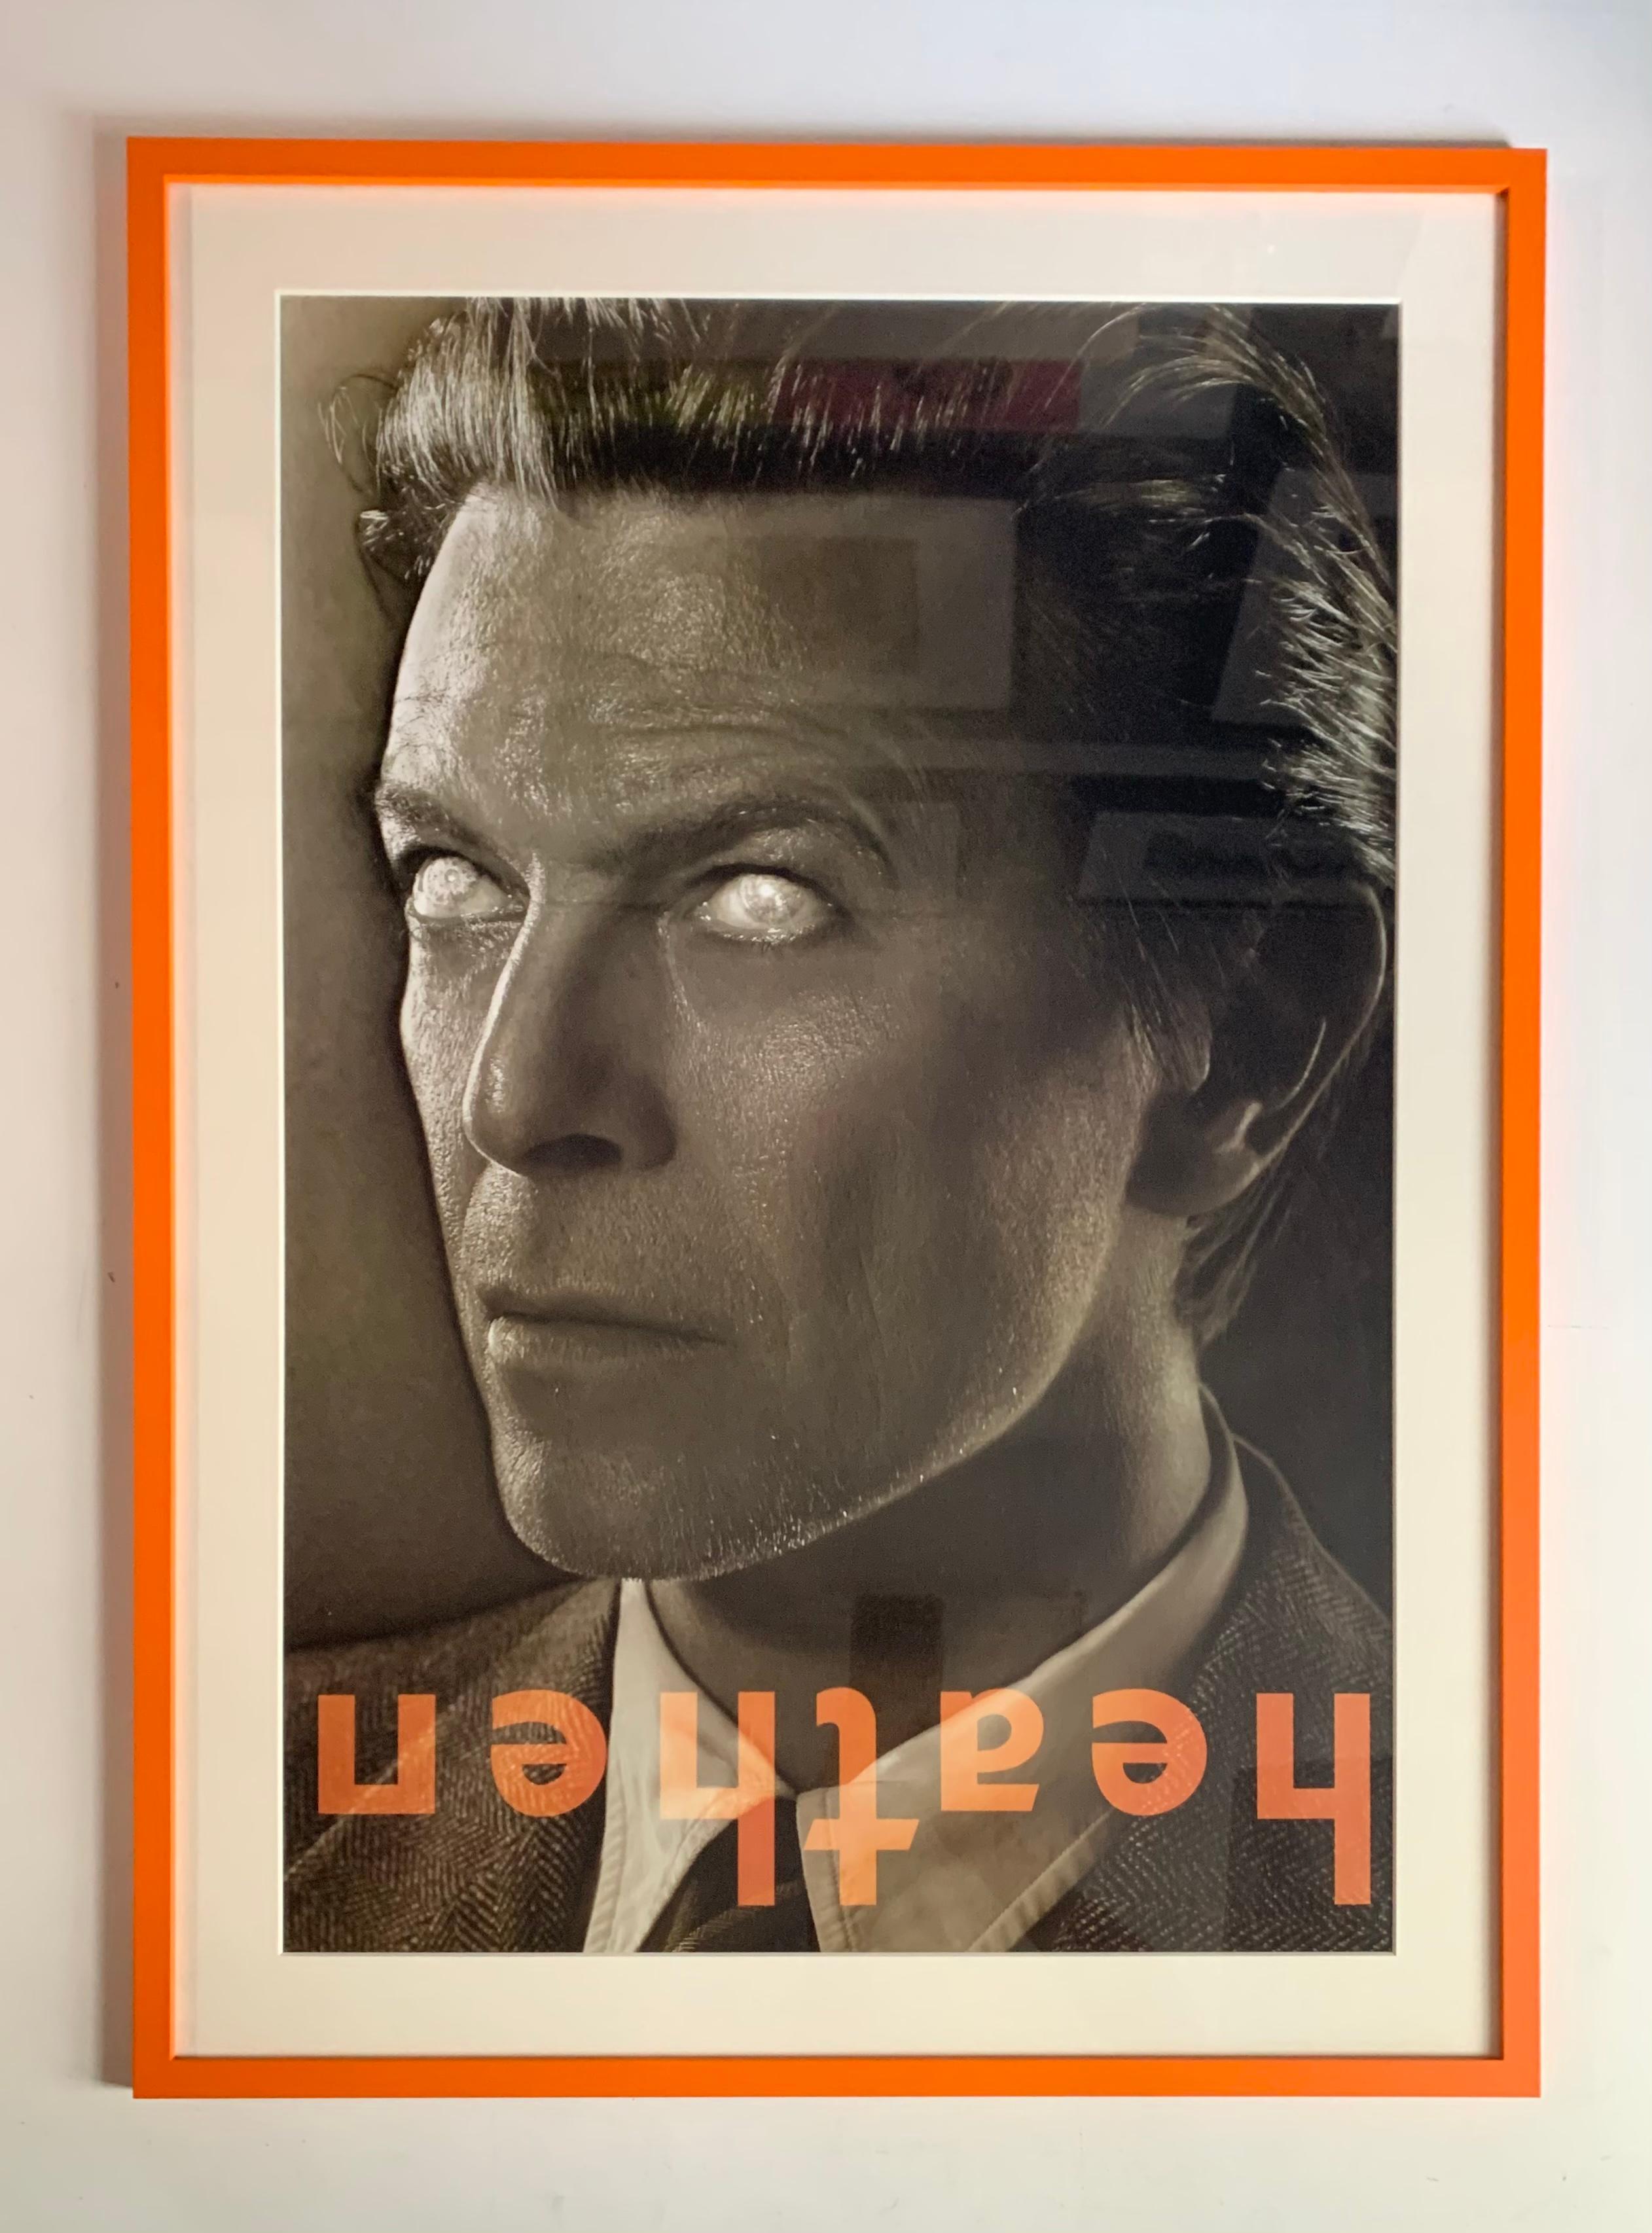 Gerahmter Original-Vintage-Posterdruck von David Bowie Heathen  – Photograph von Markus Klinko